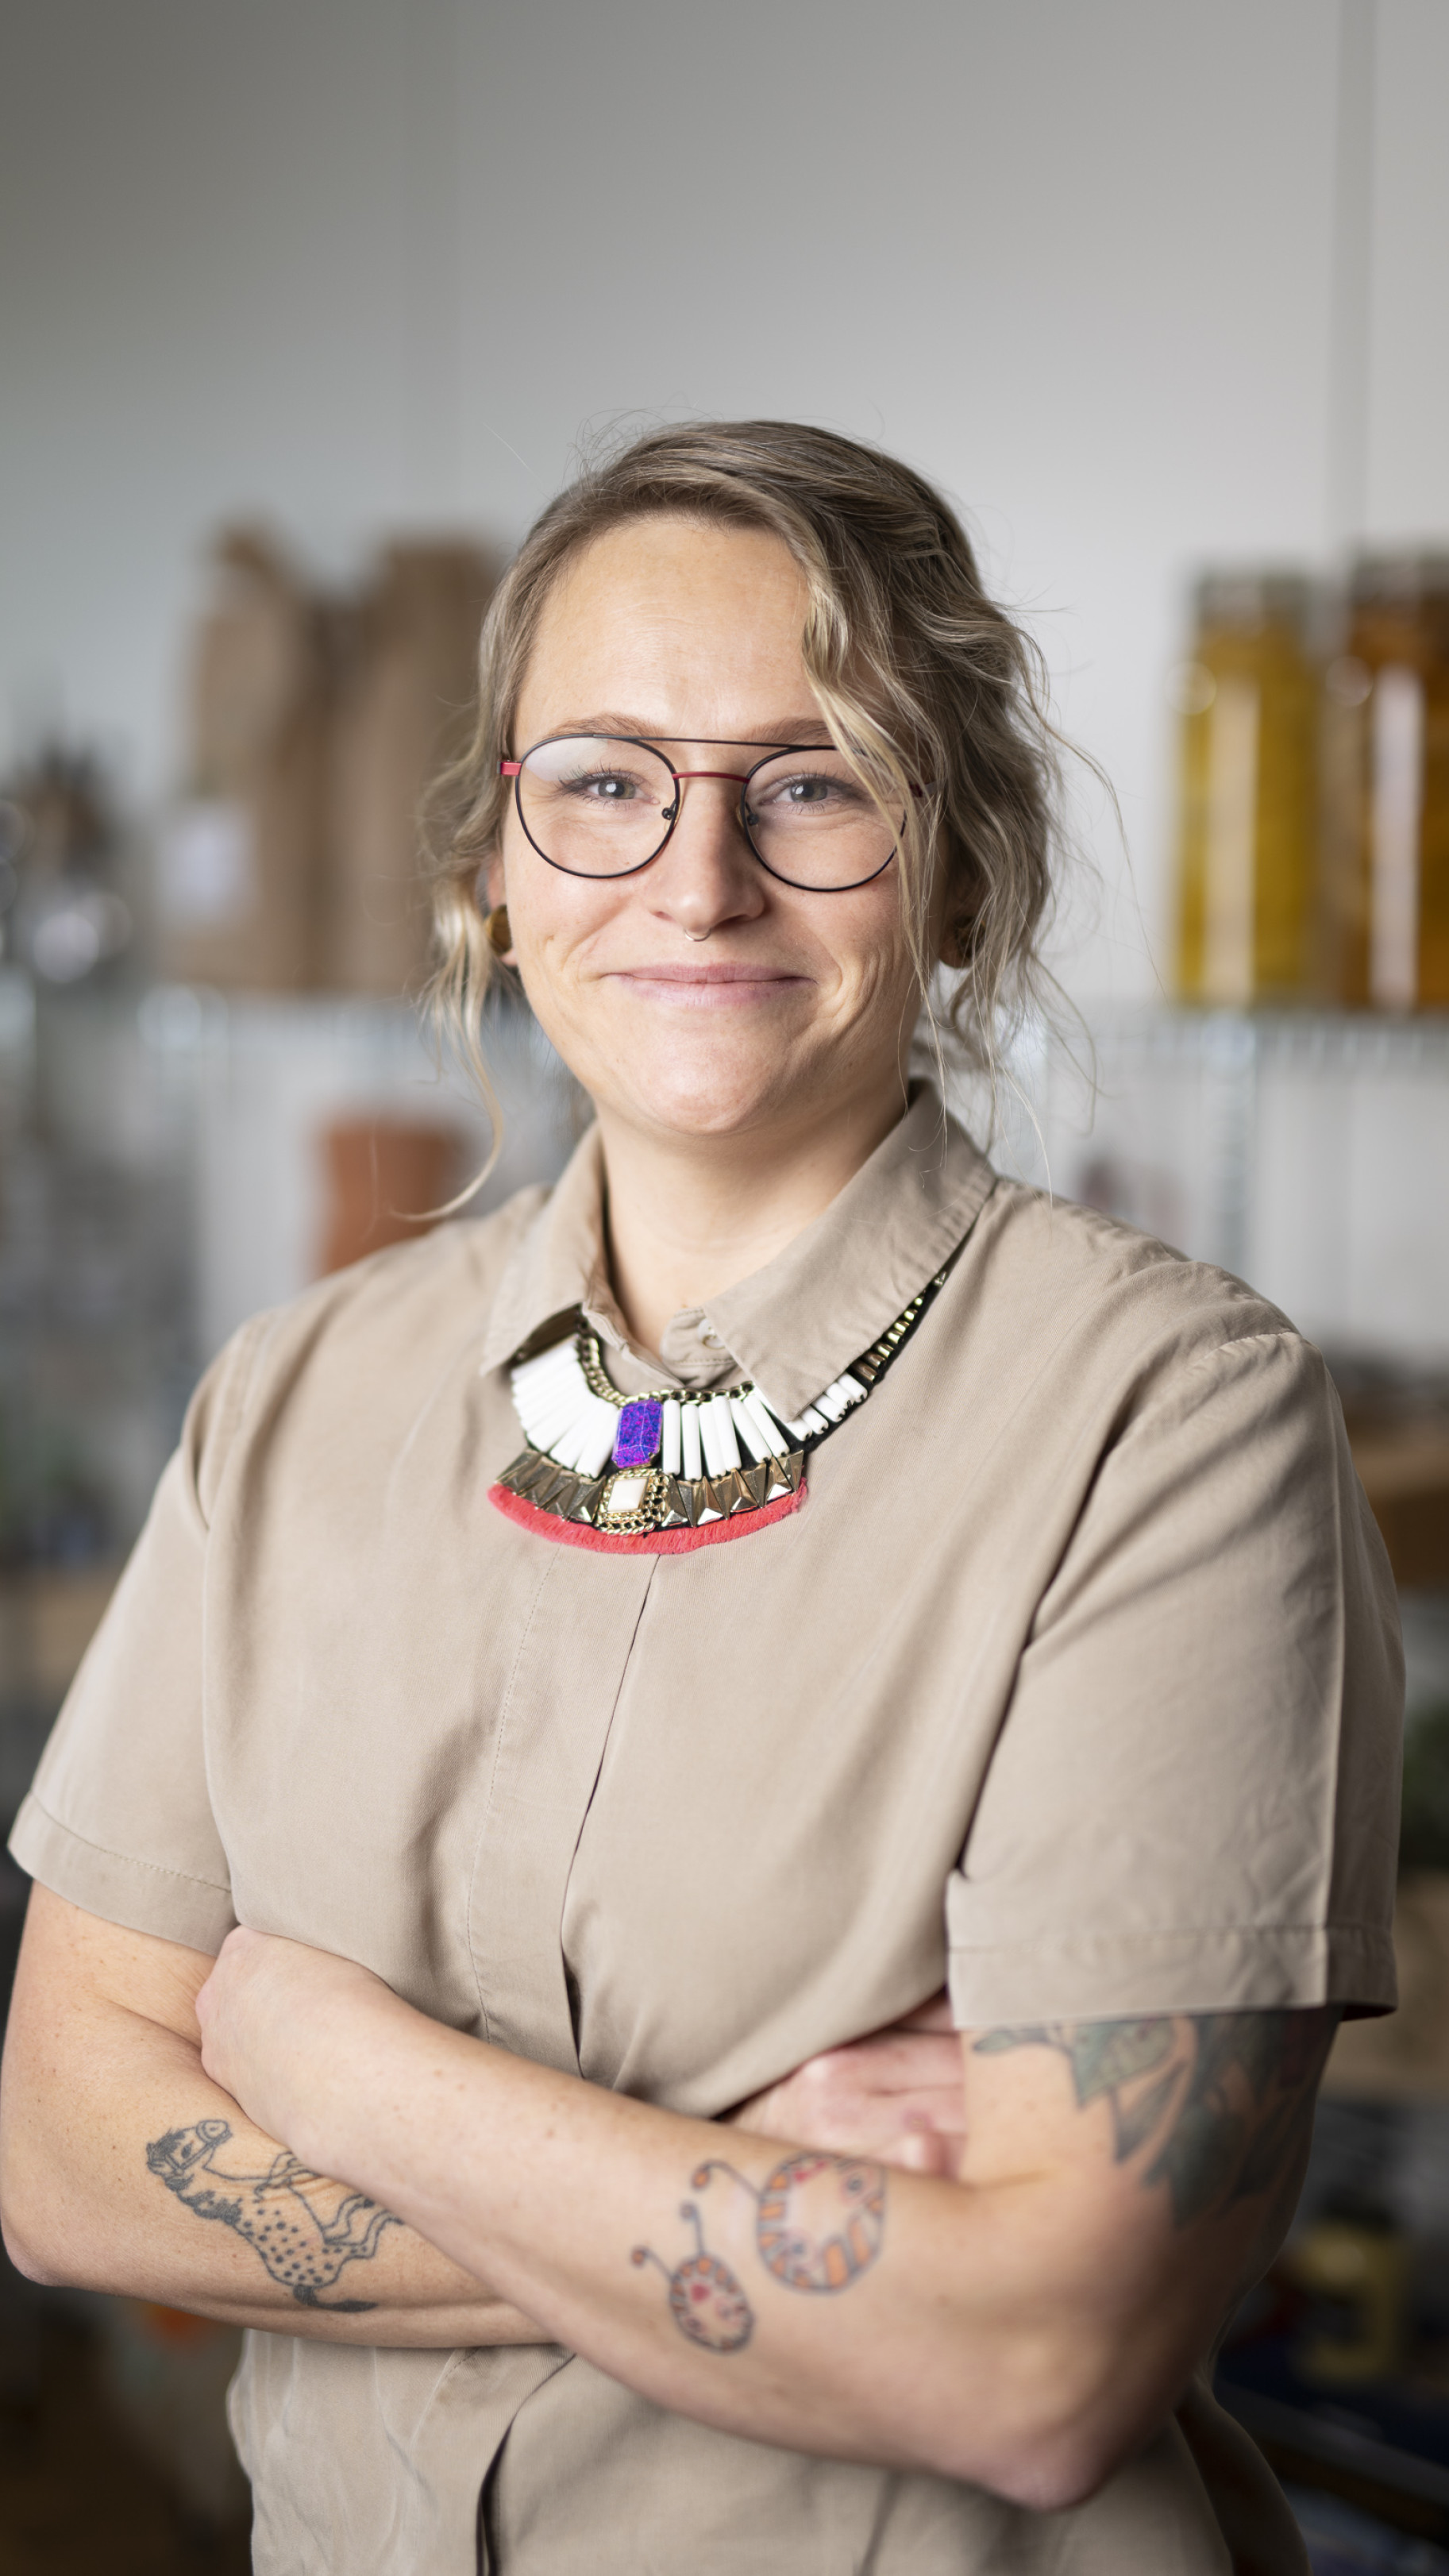 Konceptchef i Dagrofa Foodservice, Marlene Lindegaard håber, at bælgfrugternes indtog i kantinerne kan være med til at præge udviklingen af den danske madkultur